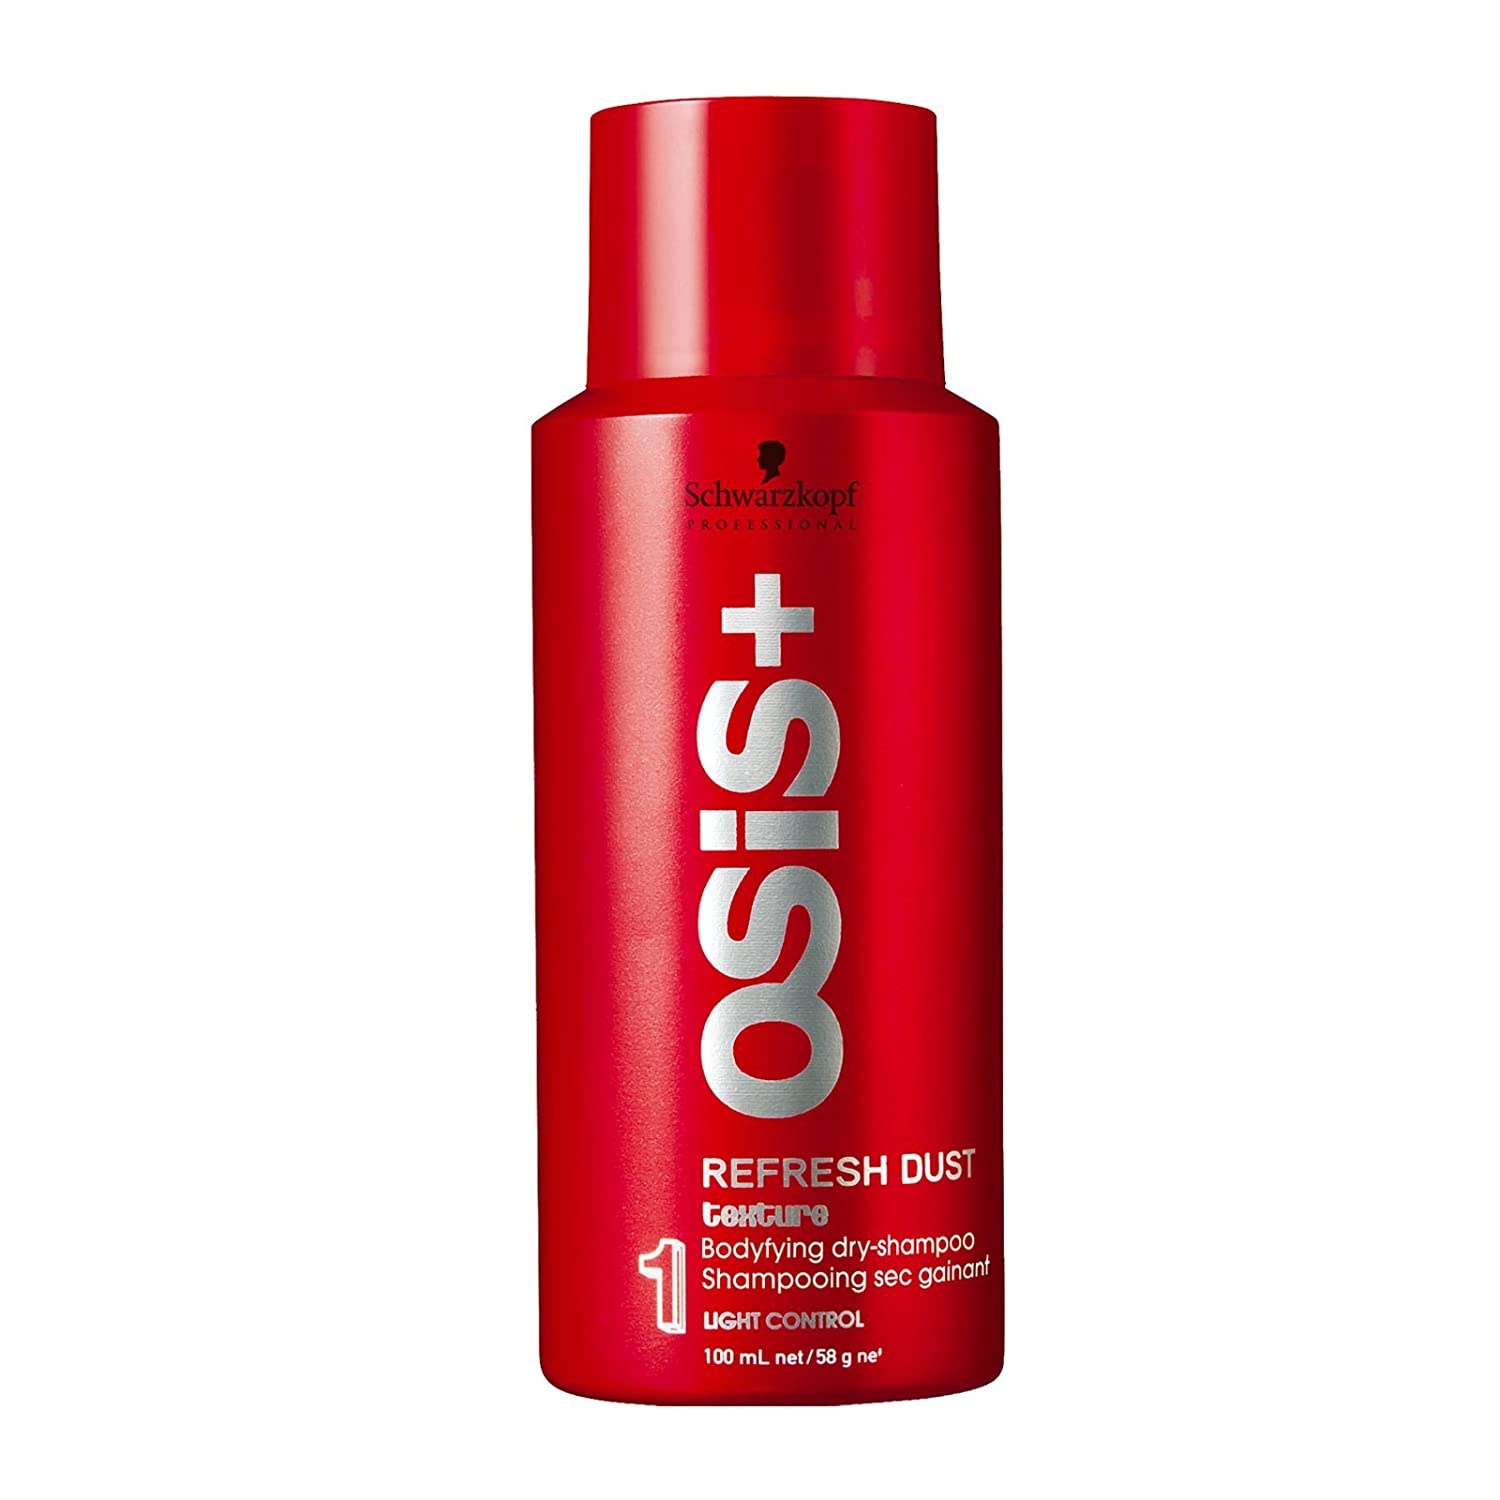 Schwarzkopf Osis Refresh Dust Bodifying Dry Shampoo Spray